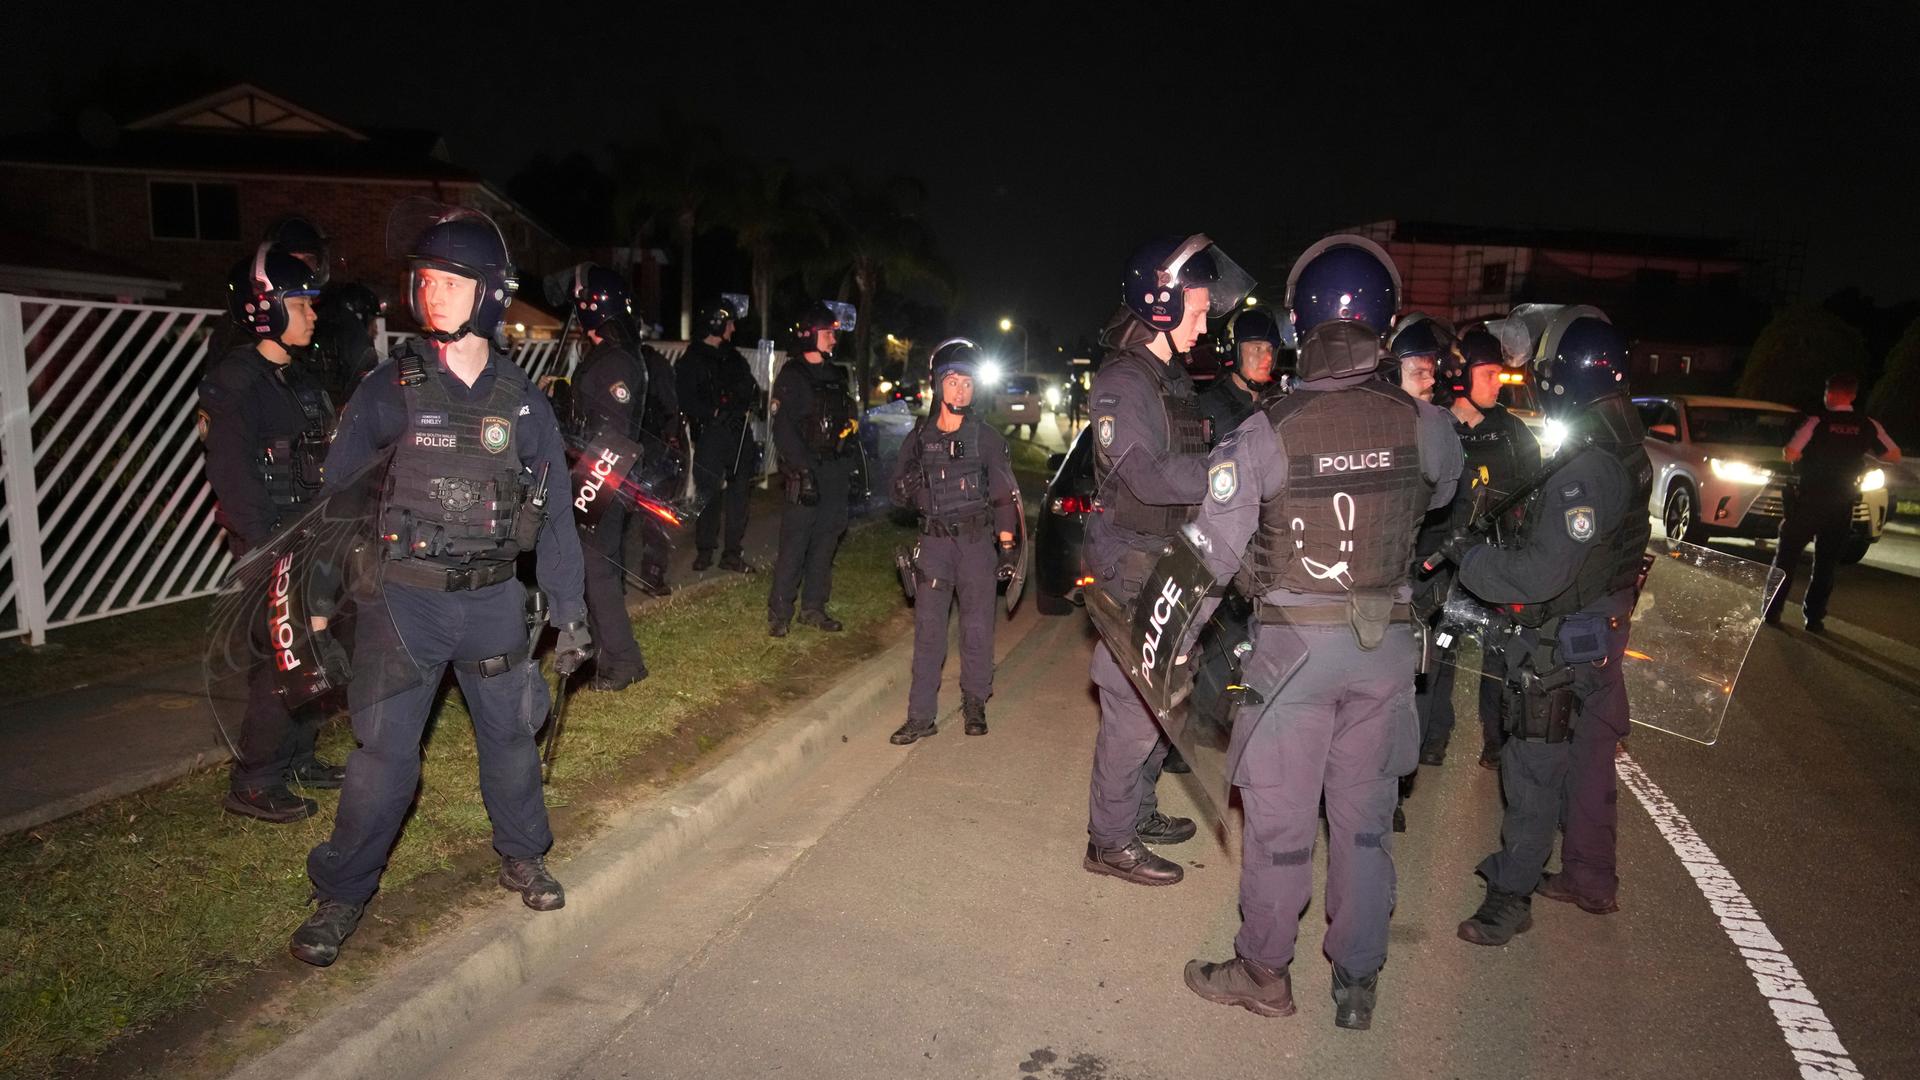 Es ist dunkel: Mehrere bewaffnete Polizisten in dunkelblauen Uniformen mit Helmen und Schildern und stehen an einer beleuchteten Straße